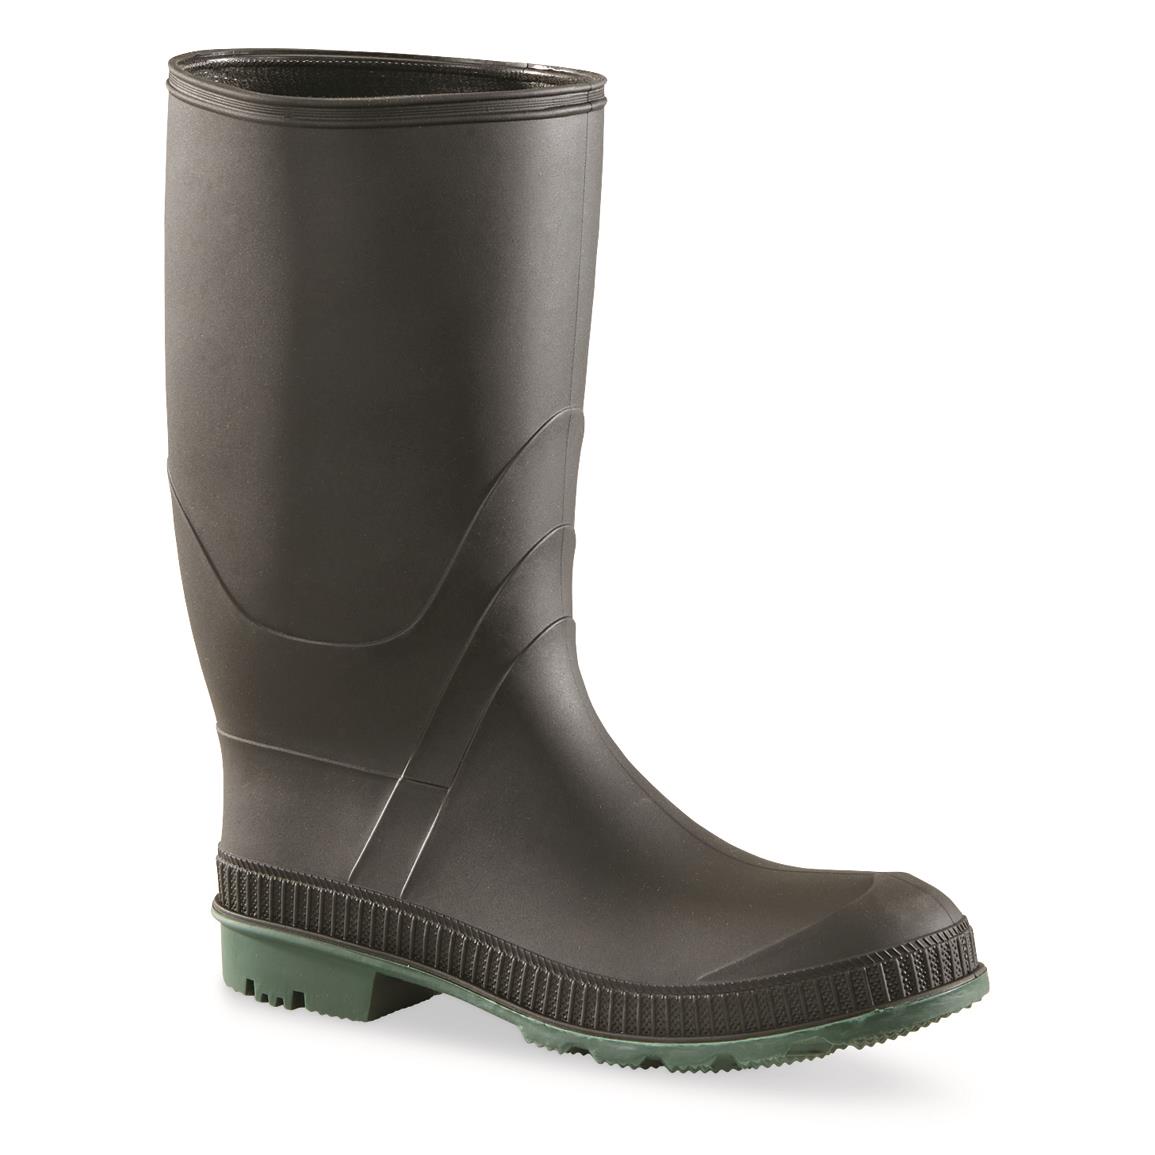 GENFOOT Women's Blazer Waterproof Rubber Boots, Black/Green